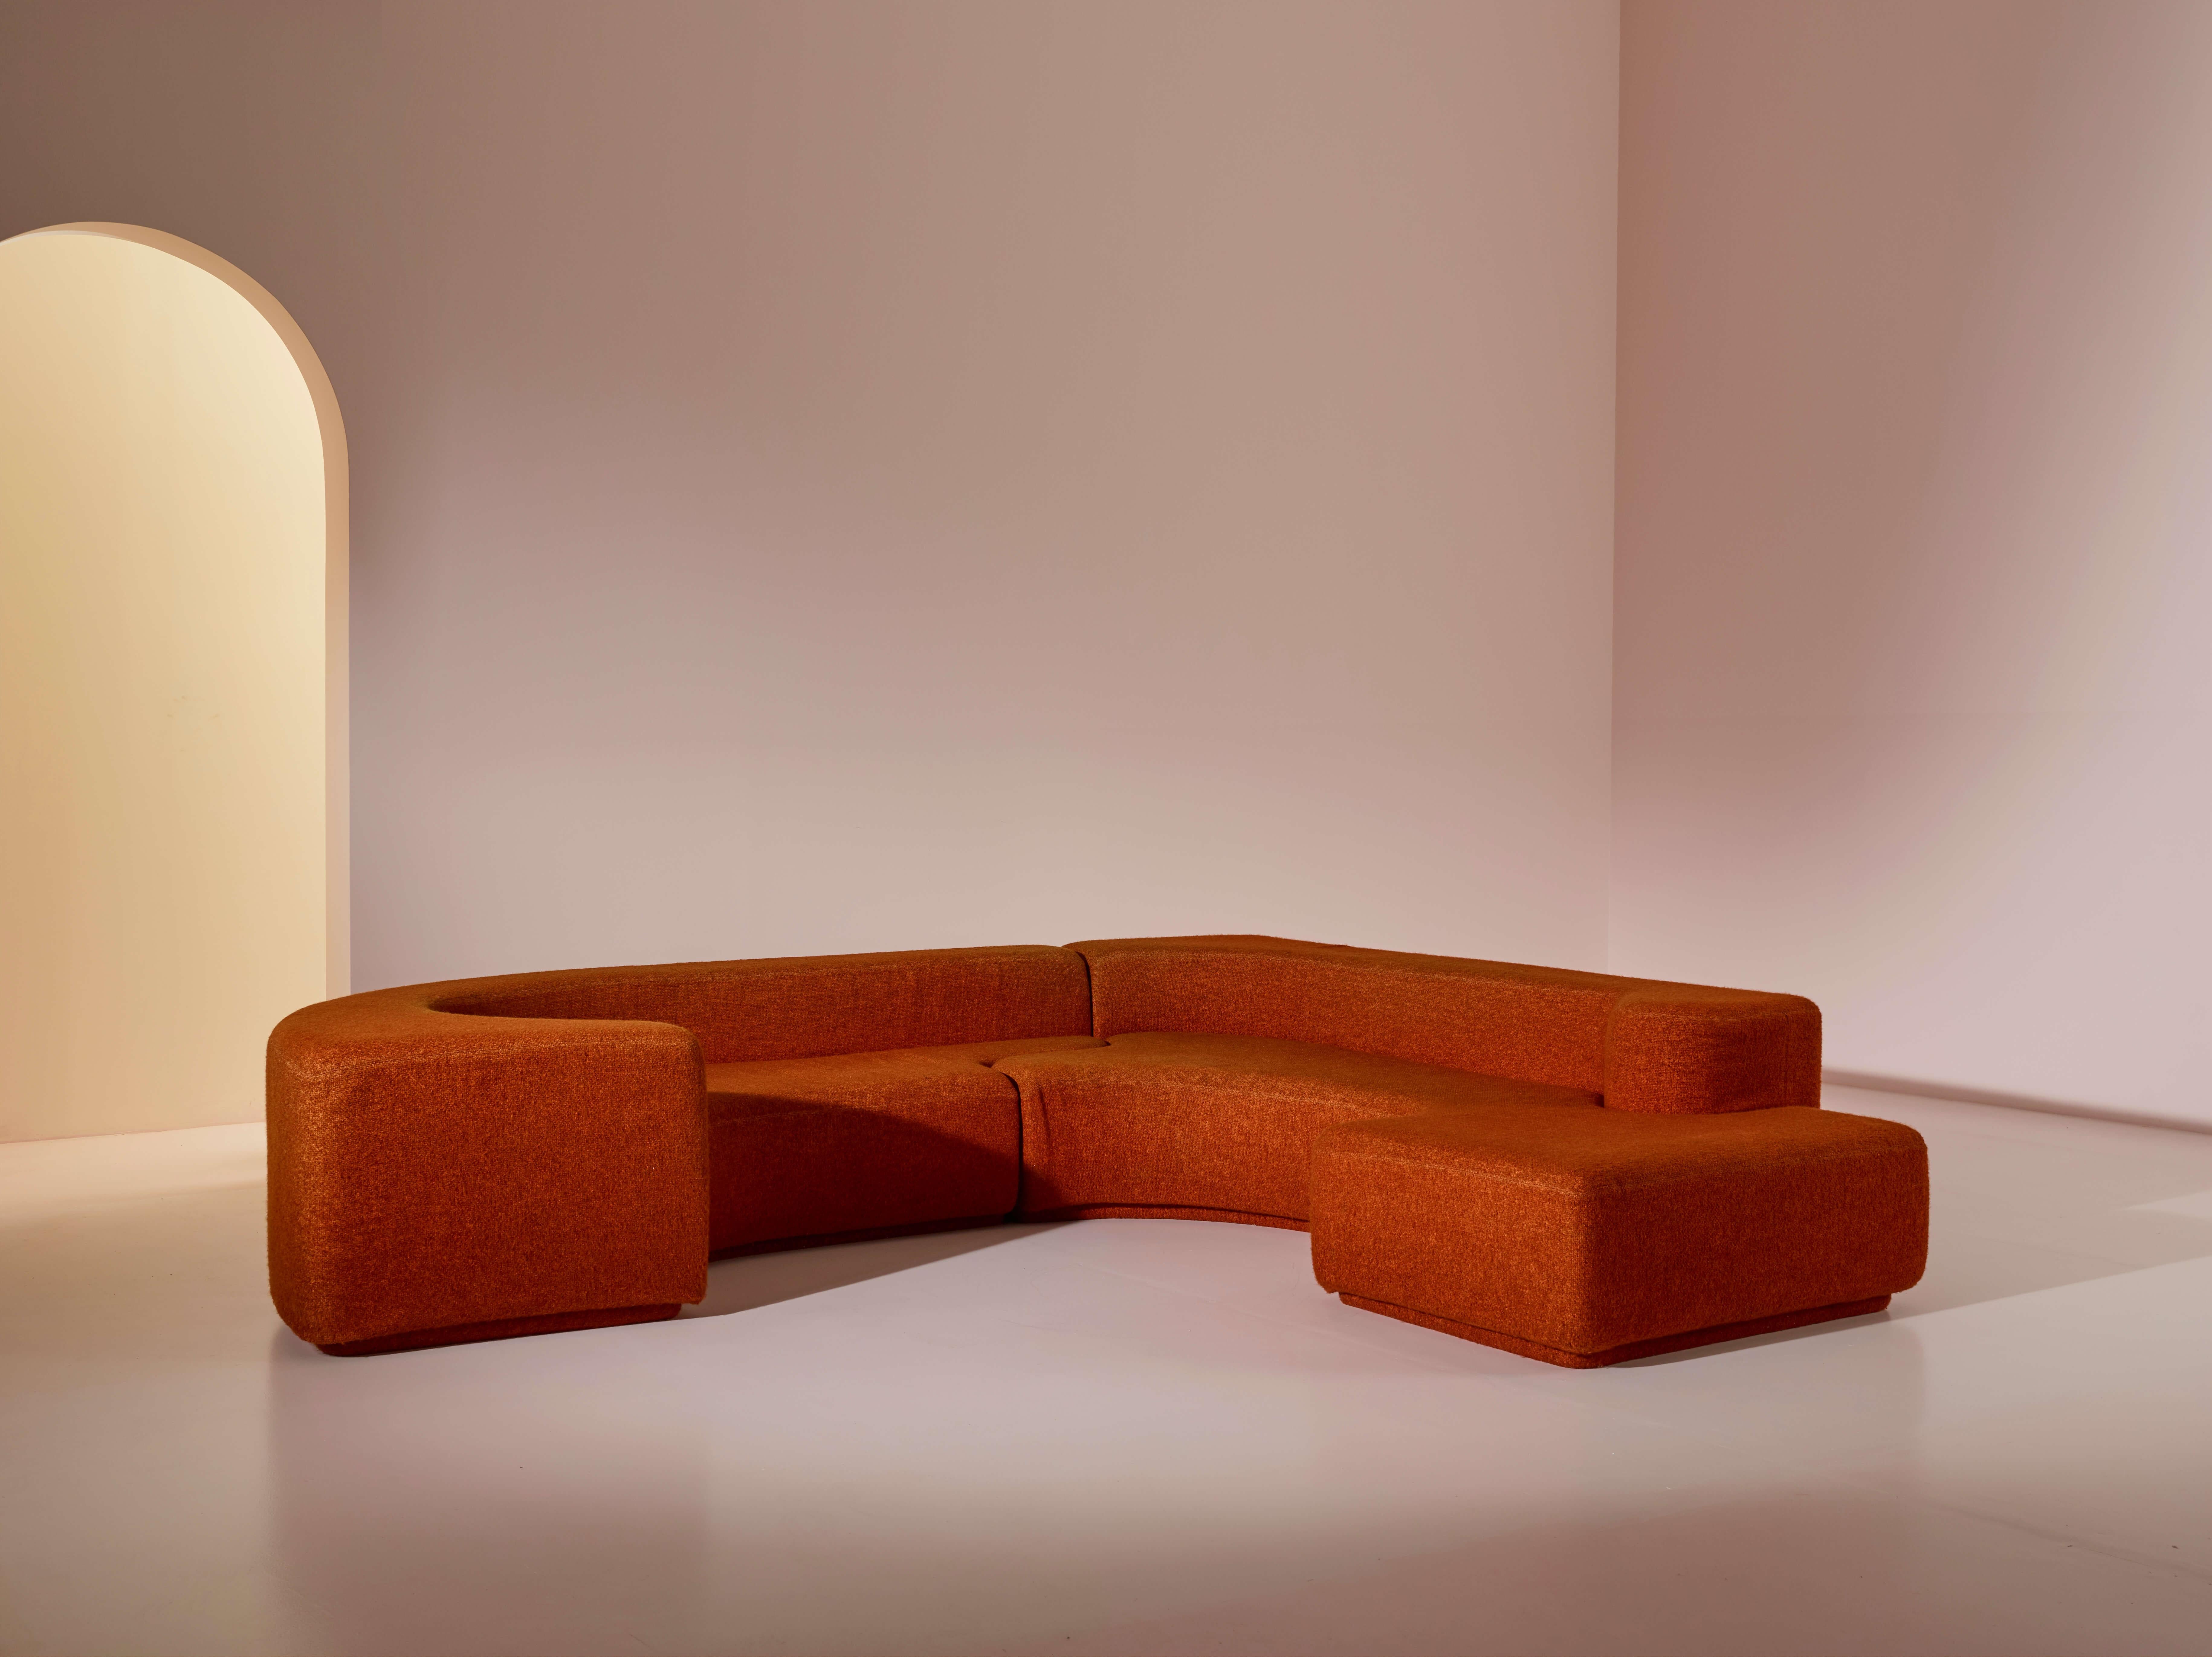 Das berühmte Sofa LARA, das in den 1960er und frühen 1970er Jahren von Roberto Pamio und Renato Toso für die italienische Manufaktur Stilwood entworfen wurde, strahlt einen unverwechselbaren Charme aus, der es zu einer Ikone macht. Der orangefarbene